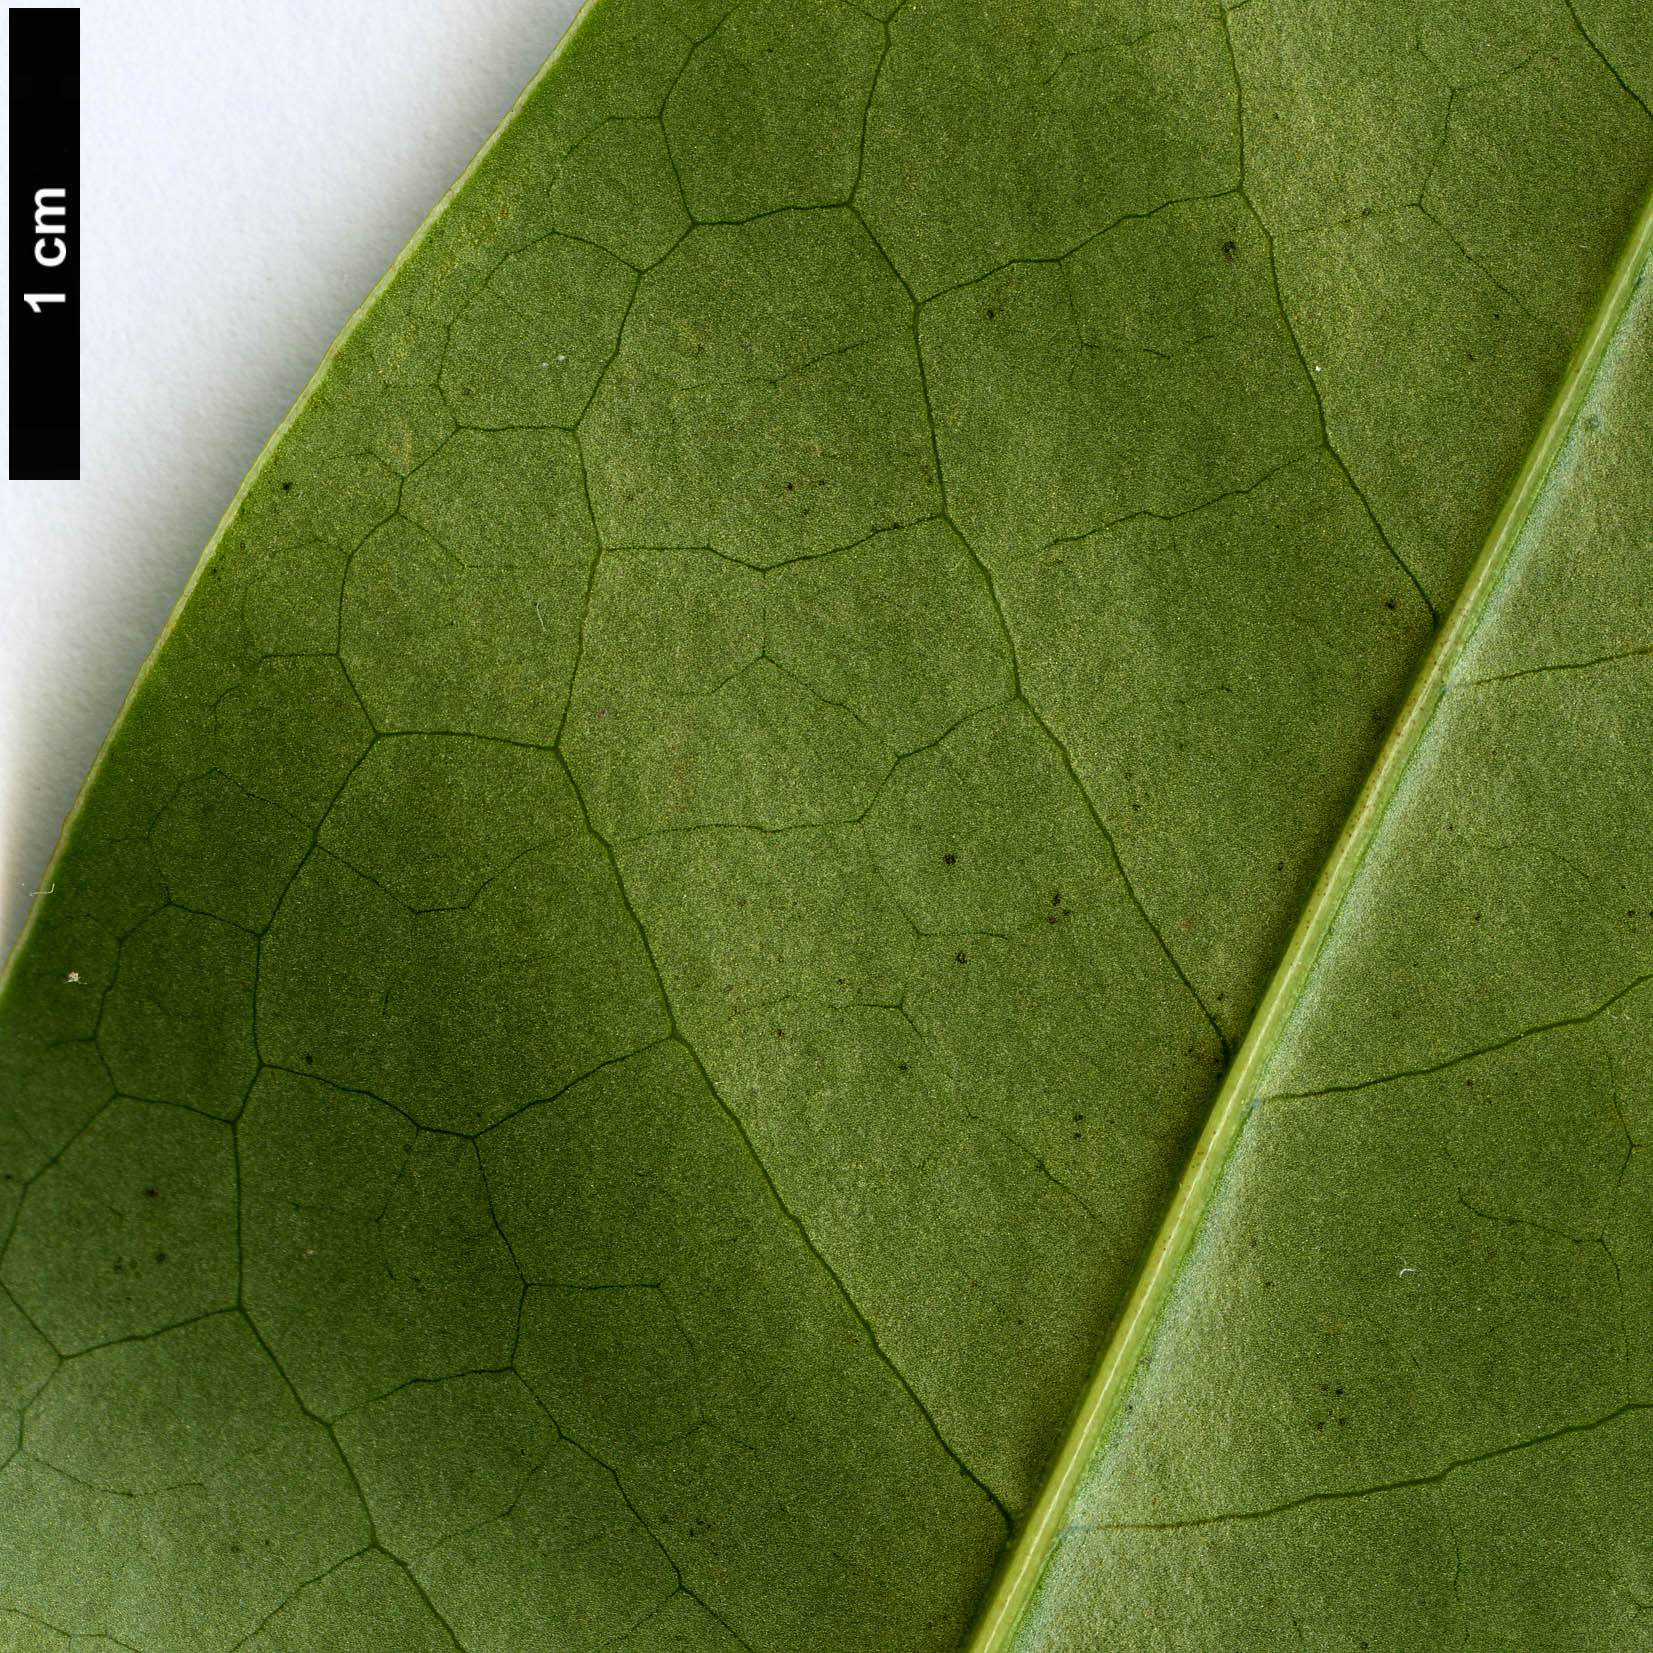 High resolution image: Family: Magnoliaceae - Genus: Magnolia - Taxon: aromatica